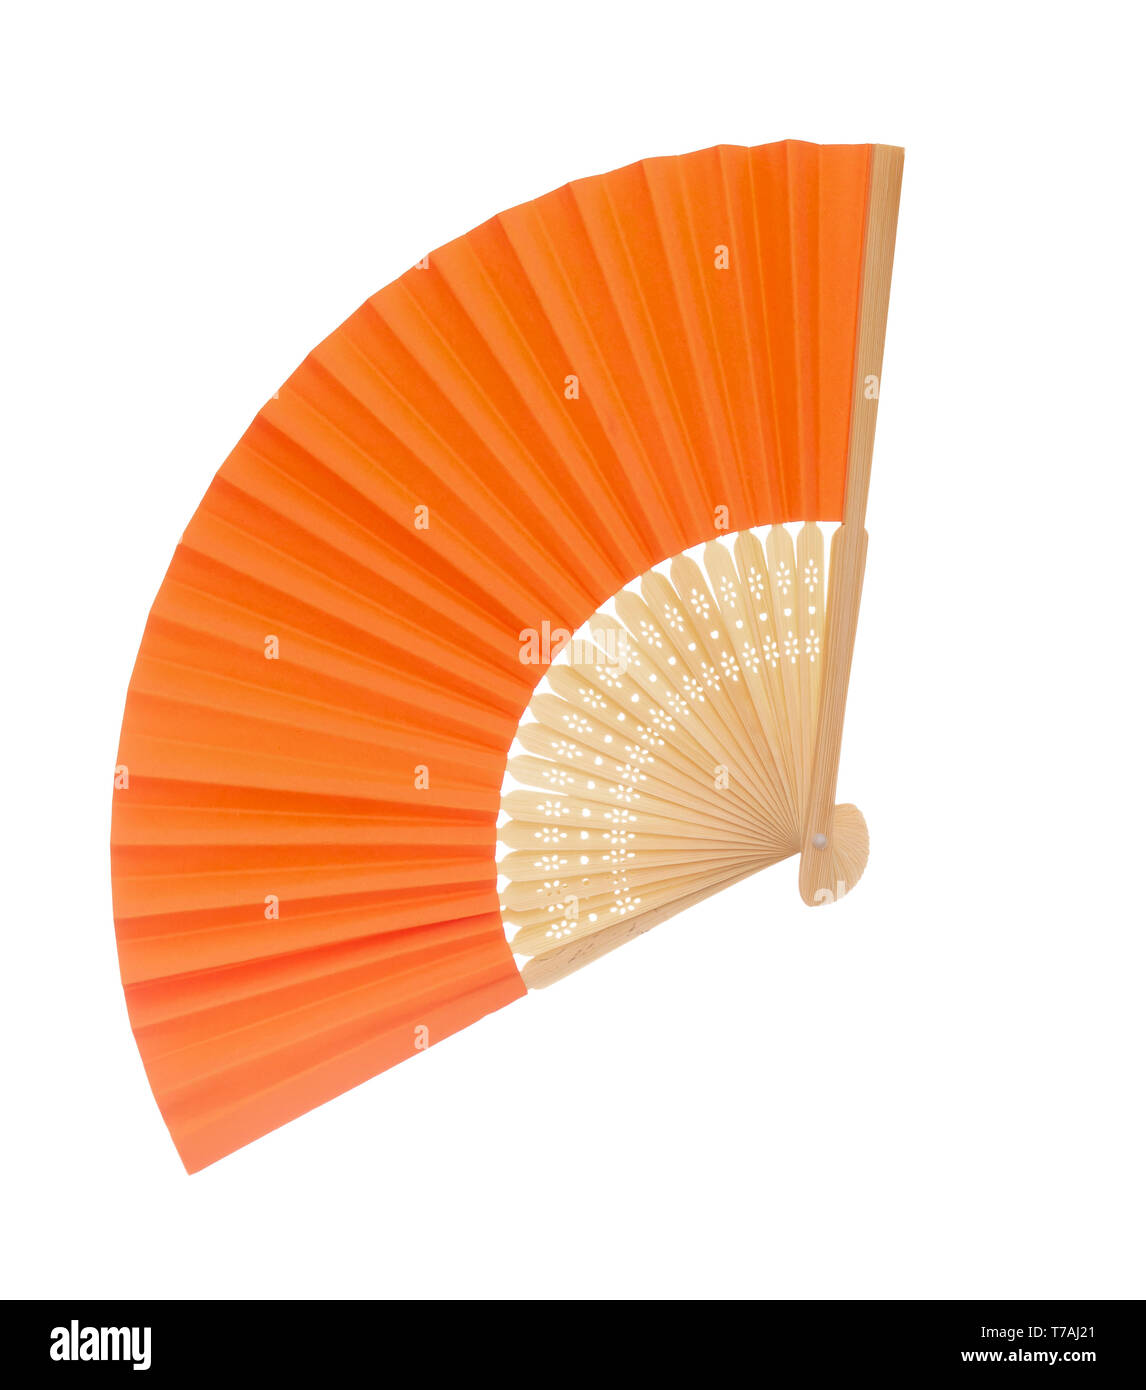 Il colore arancio della carta e del legno, forse il bambù, ventola isolati su sfondo bianco. Assenza di plastica. Foto Stock